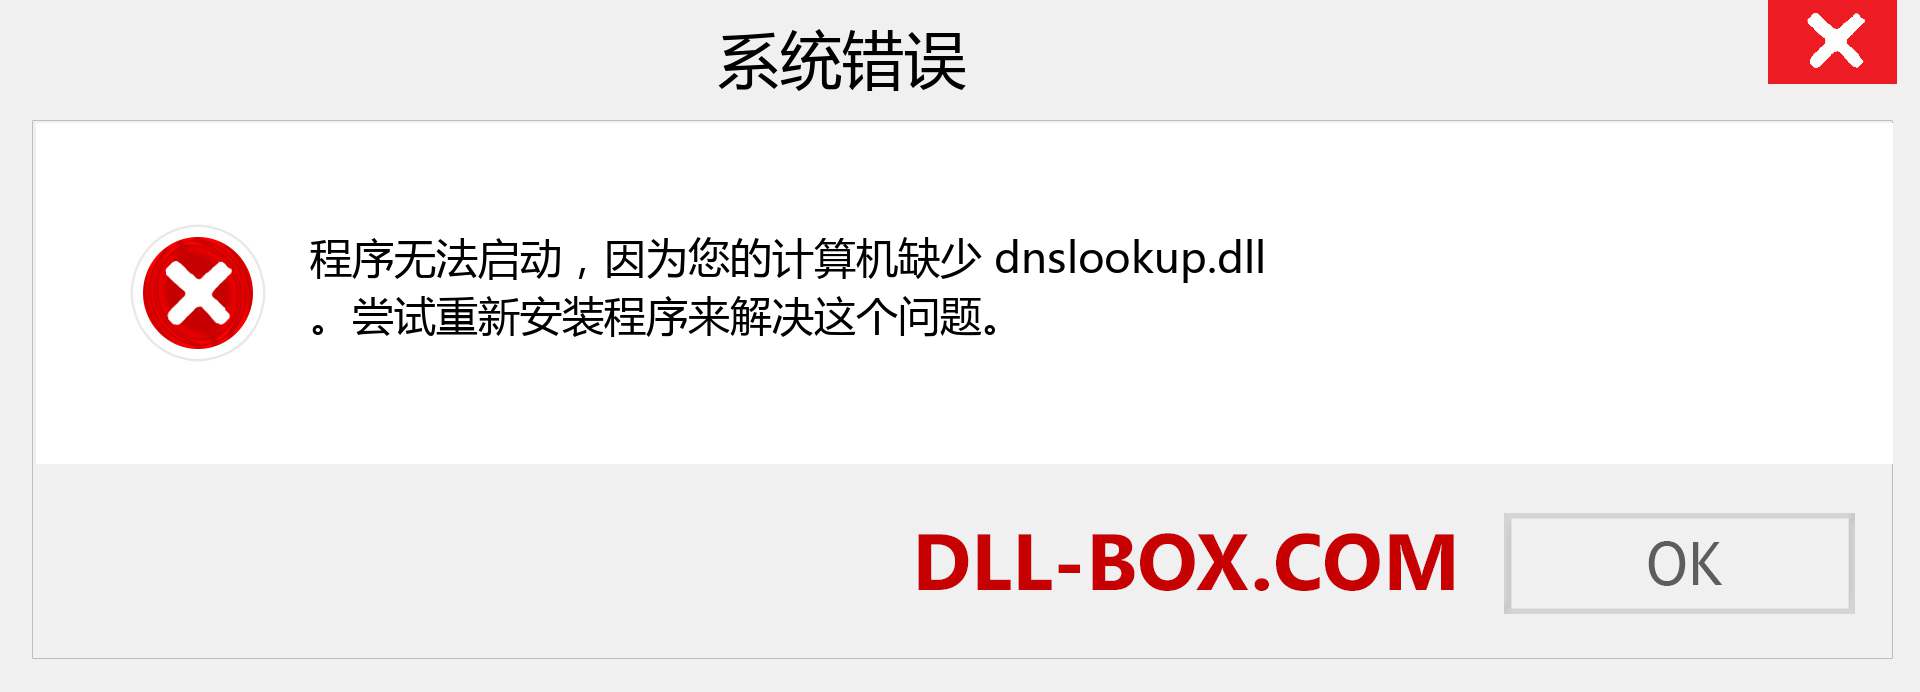 dnslookup.dll 文件丢失？。 适用于 Windows 7、8、10 的下载 - 修复 Windows、照片、图像上的 dnslookup dll 丢失错误